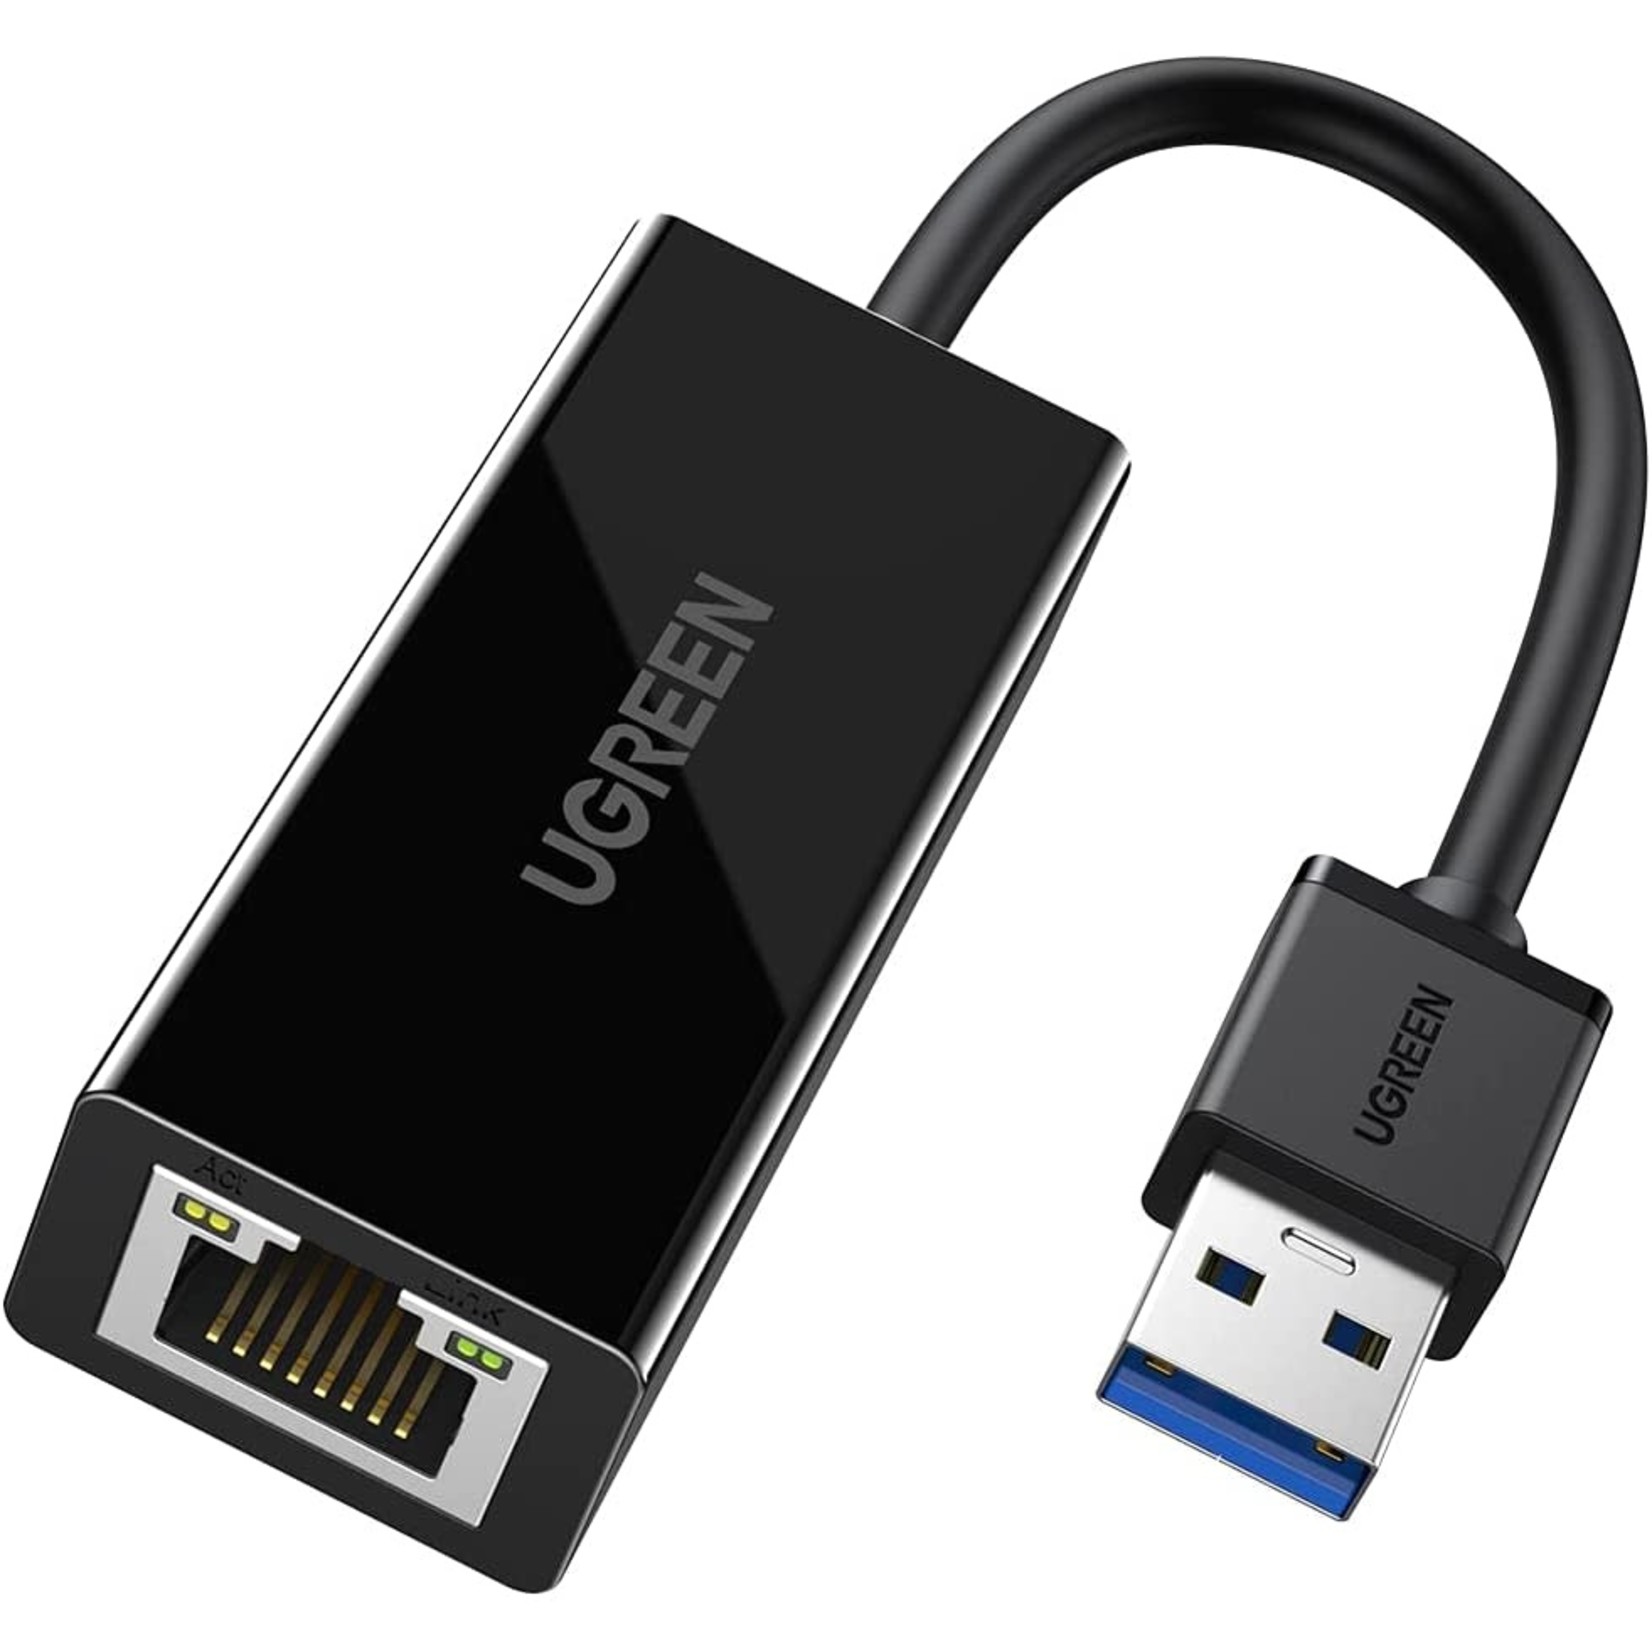 MISC USB 3.0 TO RJ45 10/100/1000 GIGABIT ETHERNET LAN NETWORK ADAPTER